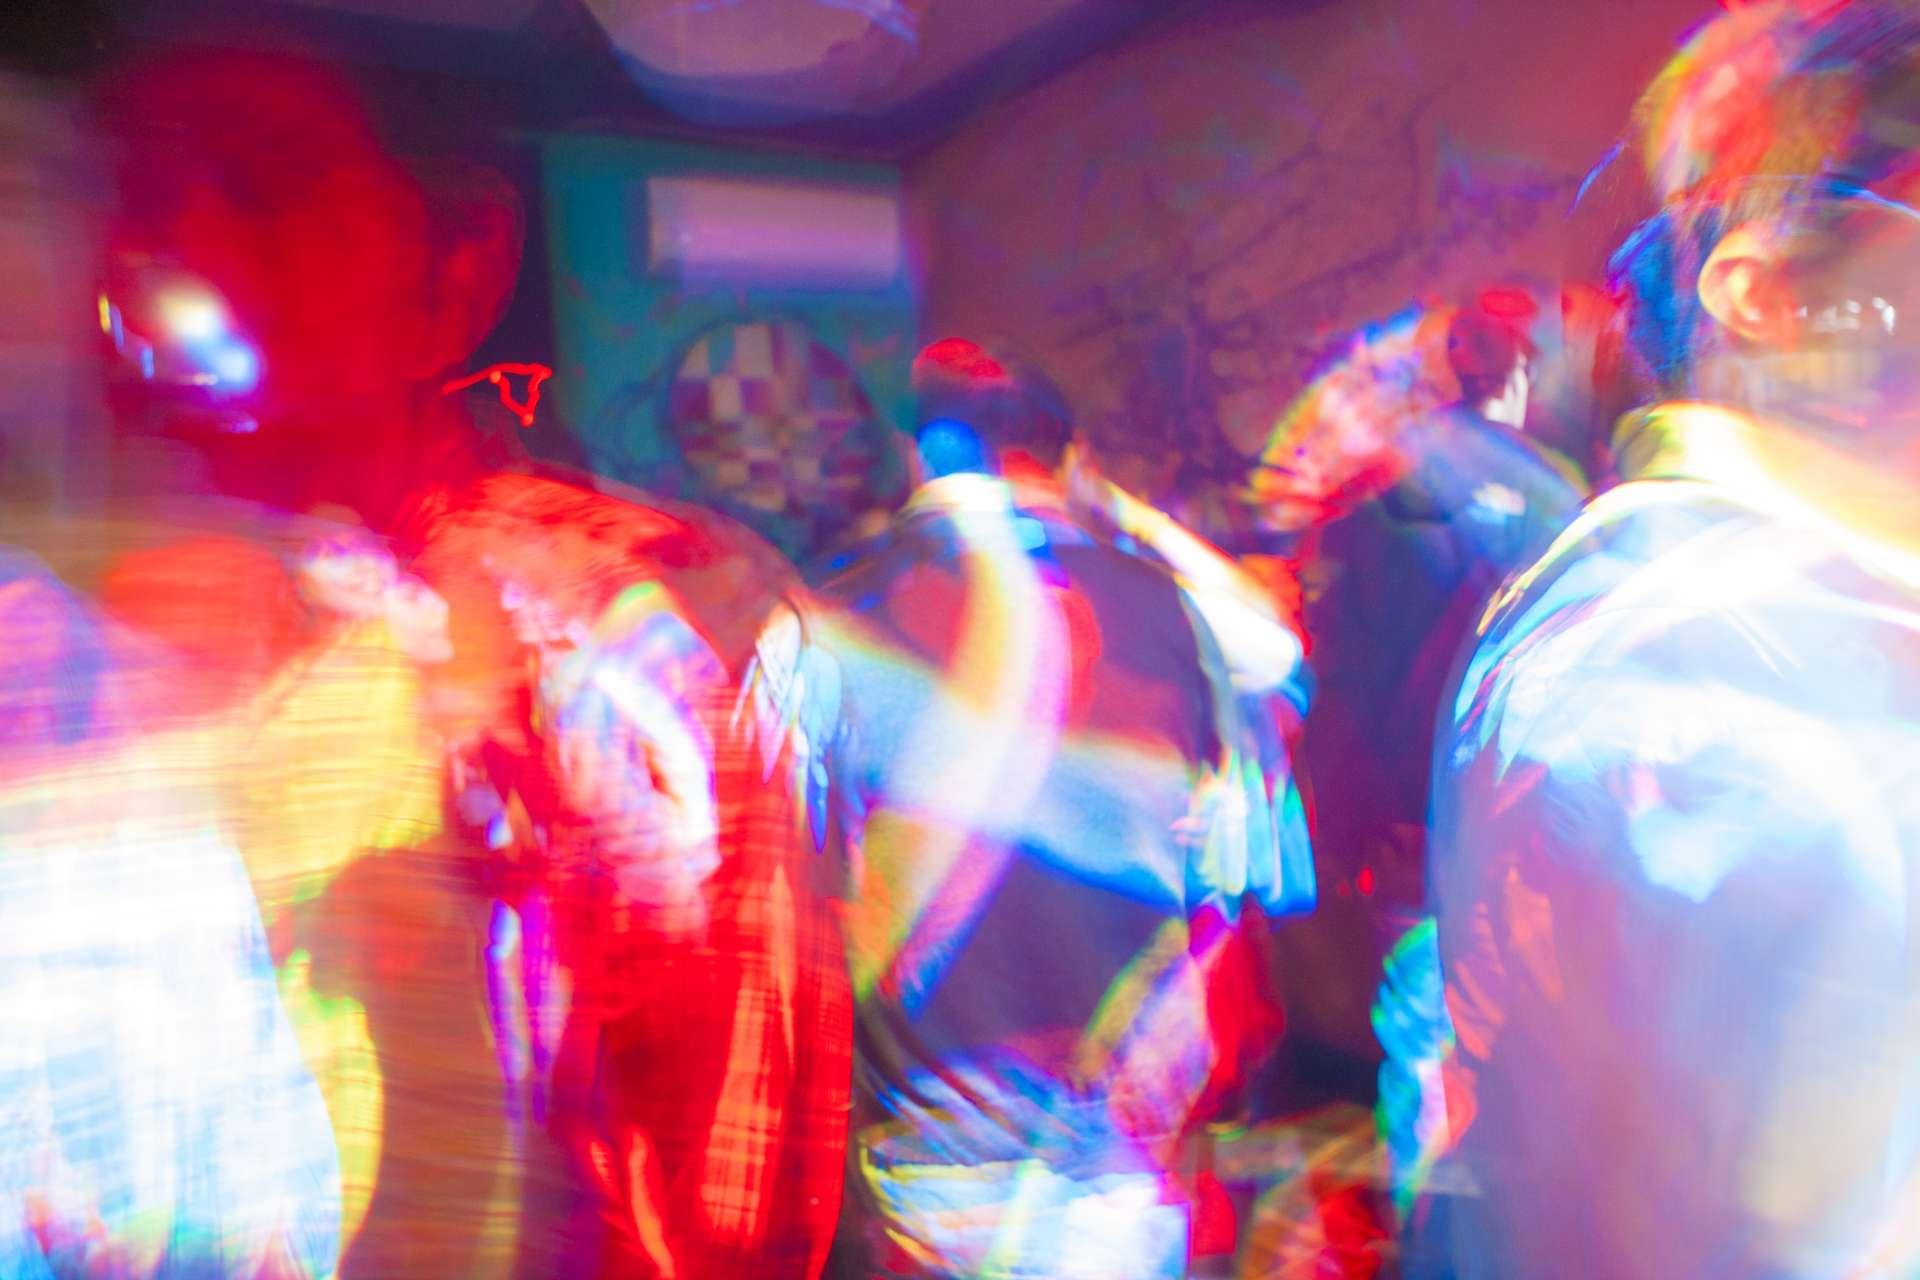 Tanzfläche voller Farbe mit Partygästen in Trance